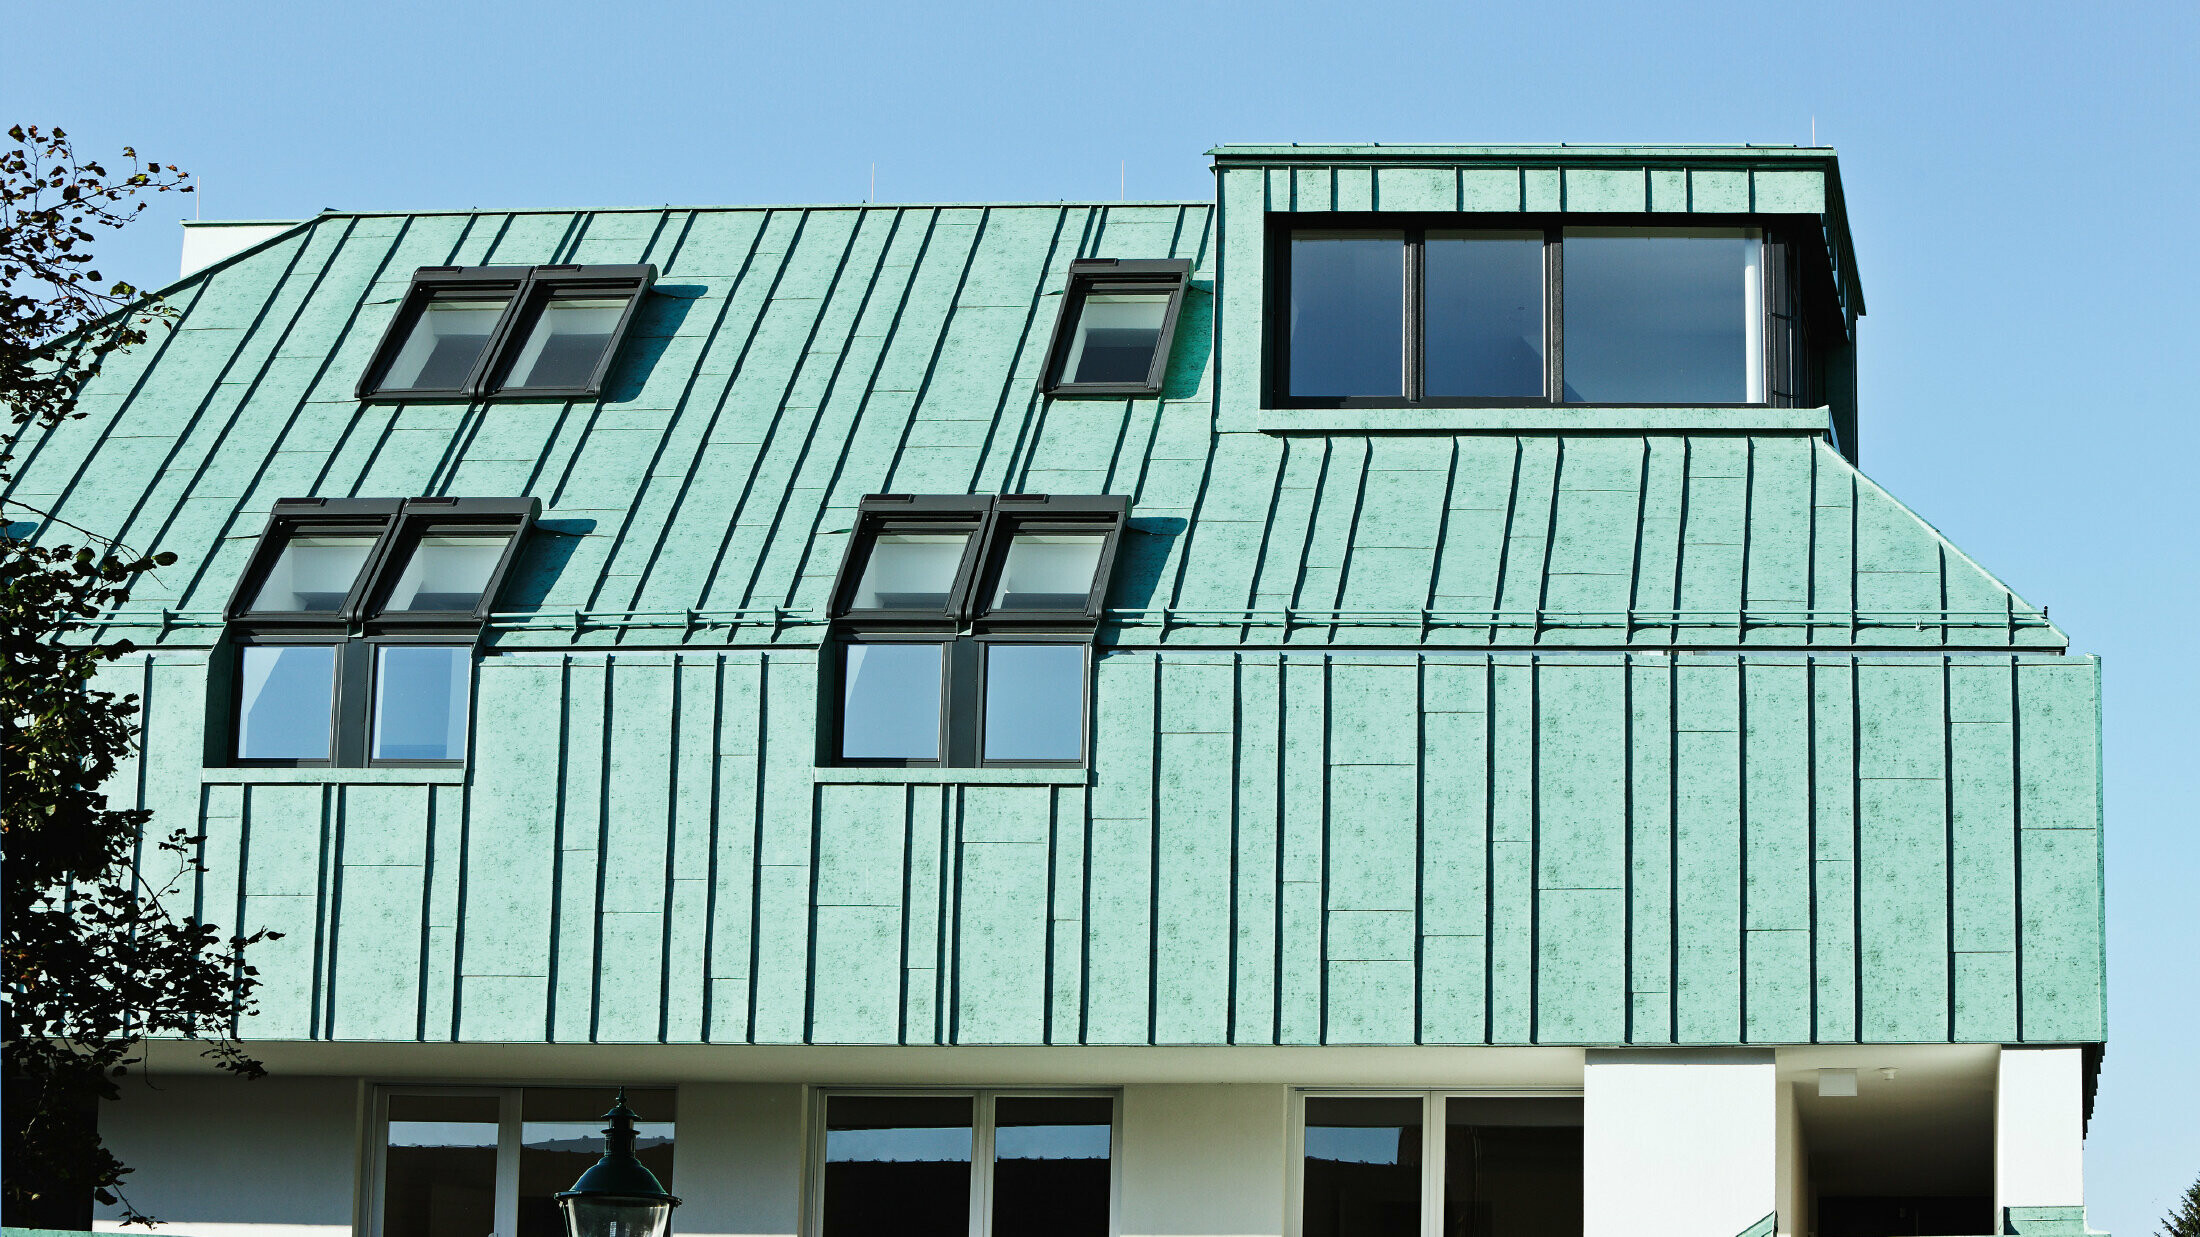 Řešení střechy a fasády se systémem PREFA v barvě zelená patina a s nestejně širokými pásy